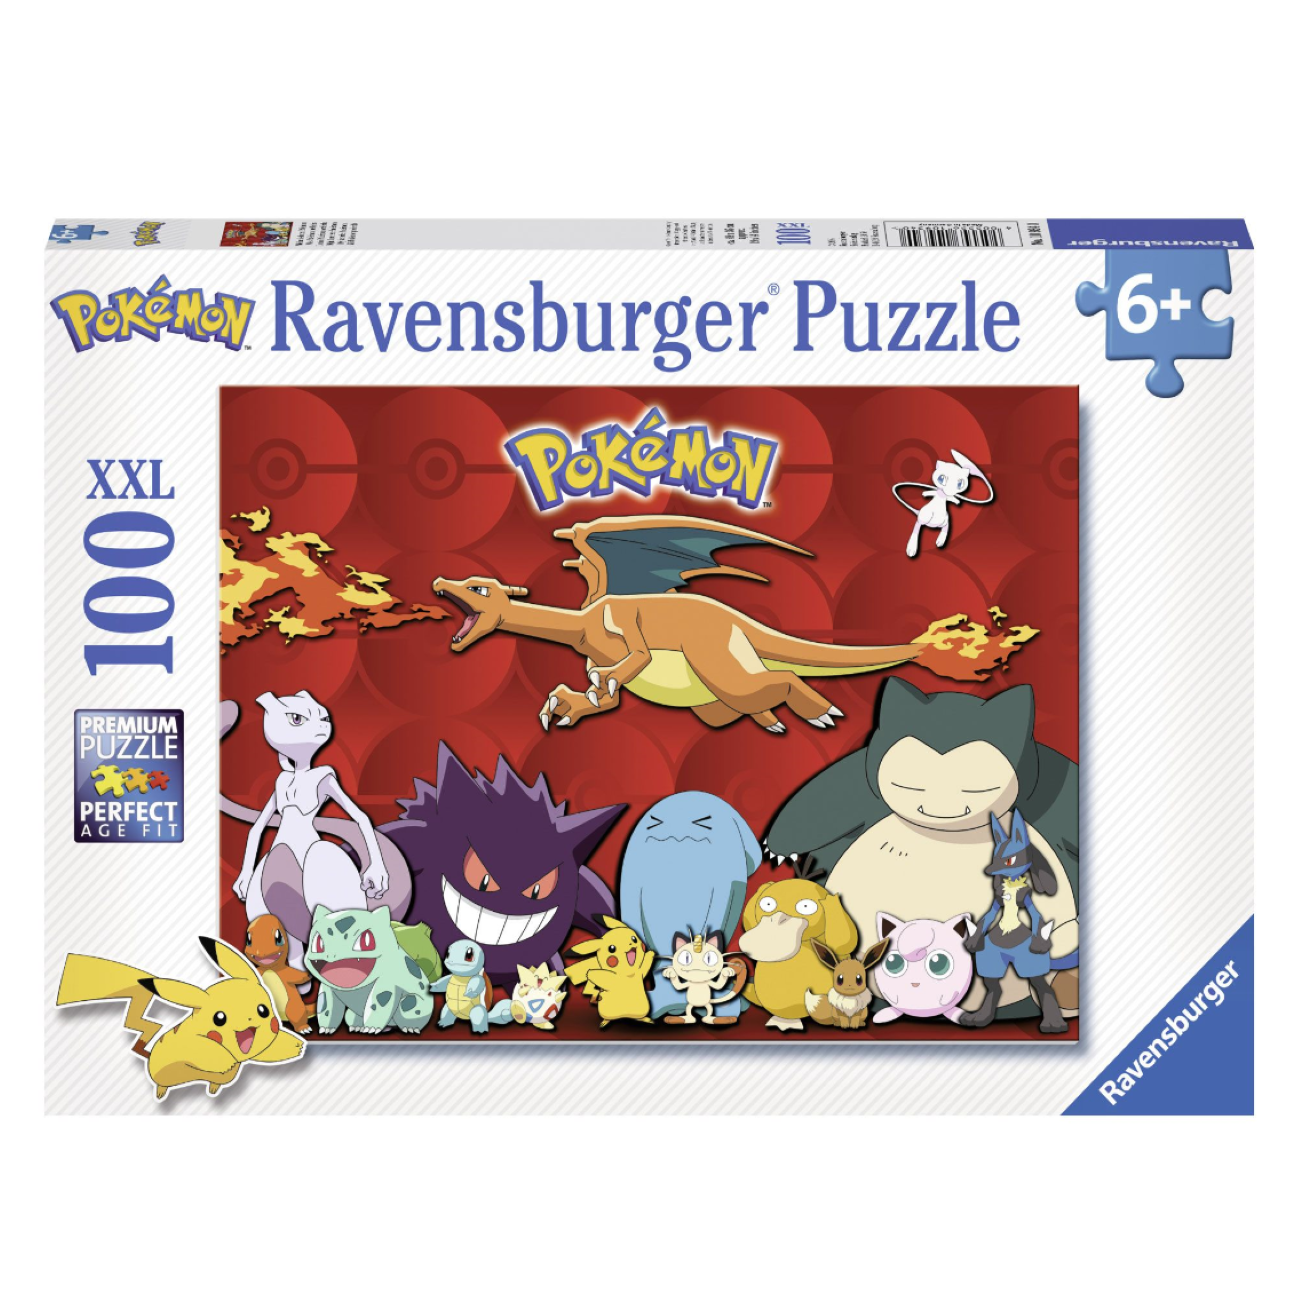 XXL RAVENSBURGER Pokémon Puzzle Teile) liebsten Pokémon (100 Meine